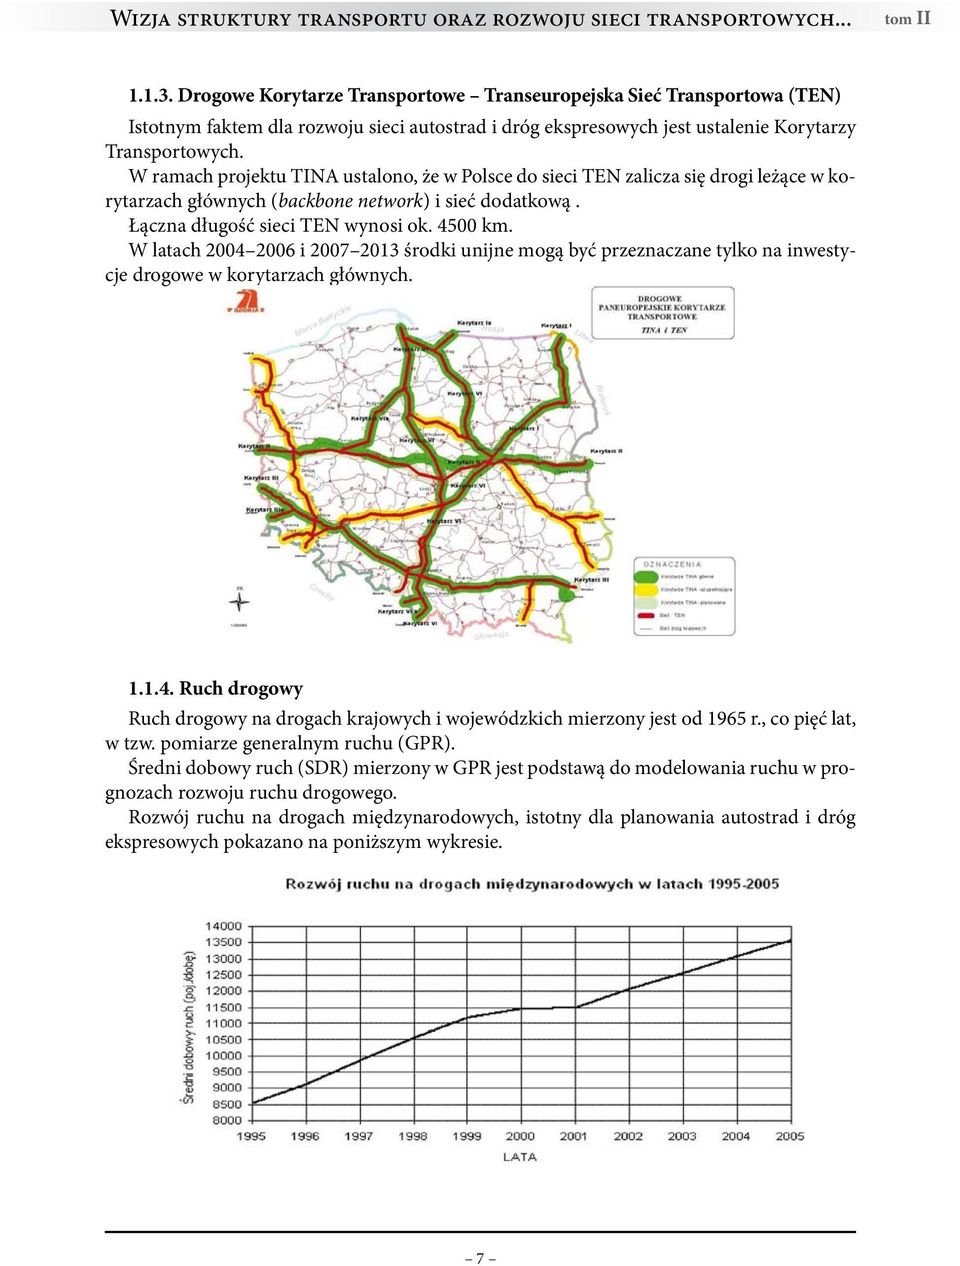 W ramach projektu TINA ustalono, że w Polsce do sieci TEN zalicza się drogi leżące w korytarzach głównych (backbone network) i sieć dodatkową. Łączna długość sieci TEN wynosi ok. 4500 km.